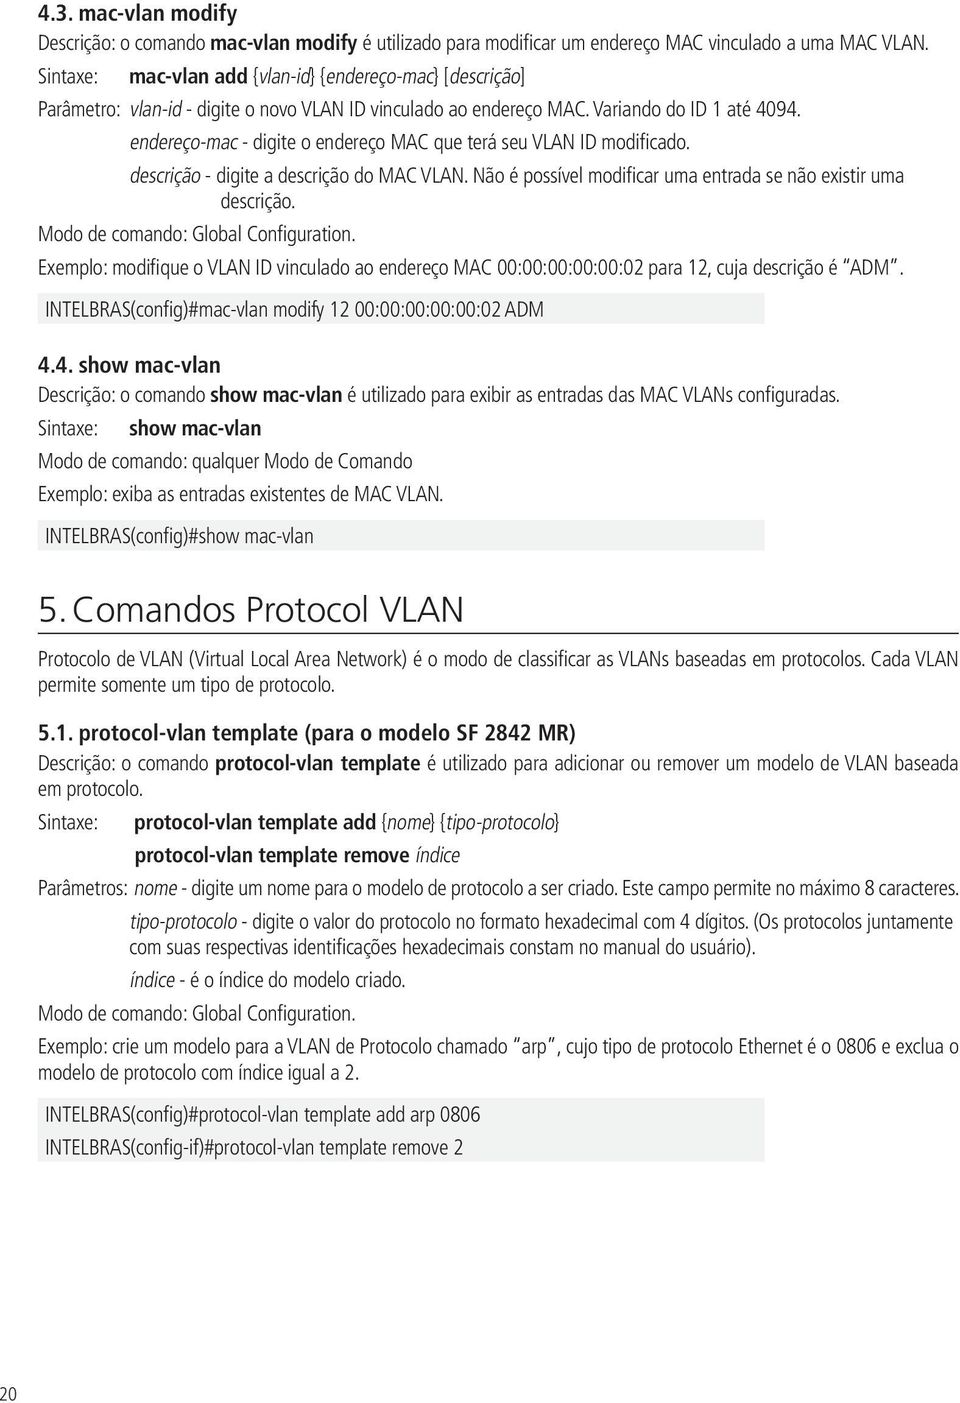 endereço-mac - digite o endereço MAC que terá seu VLAN ID modificado. descrição - digite a descrição do MAC VLAN. Não é possível modificar uma entrada se não existir uma descrição.